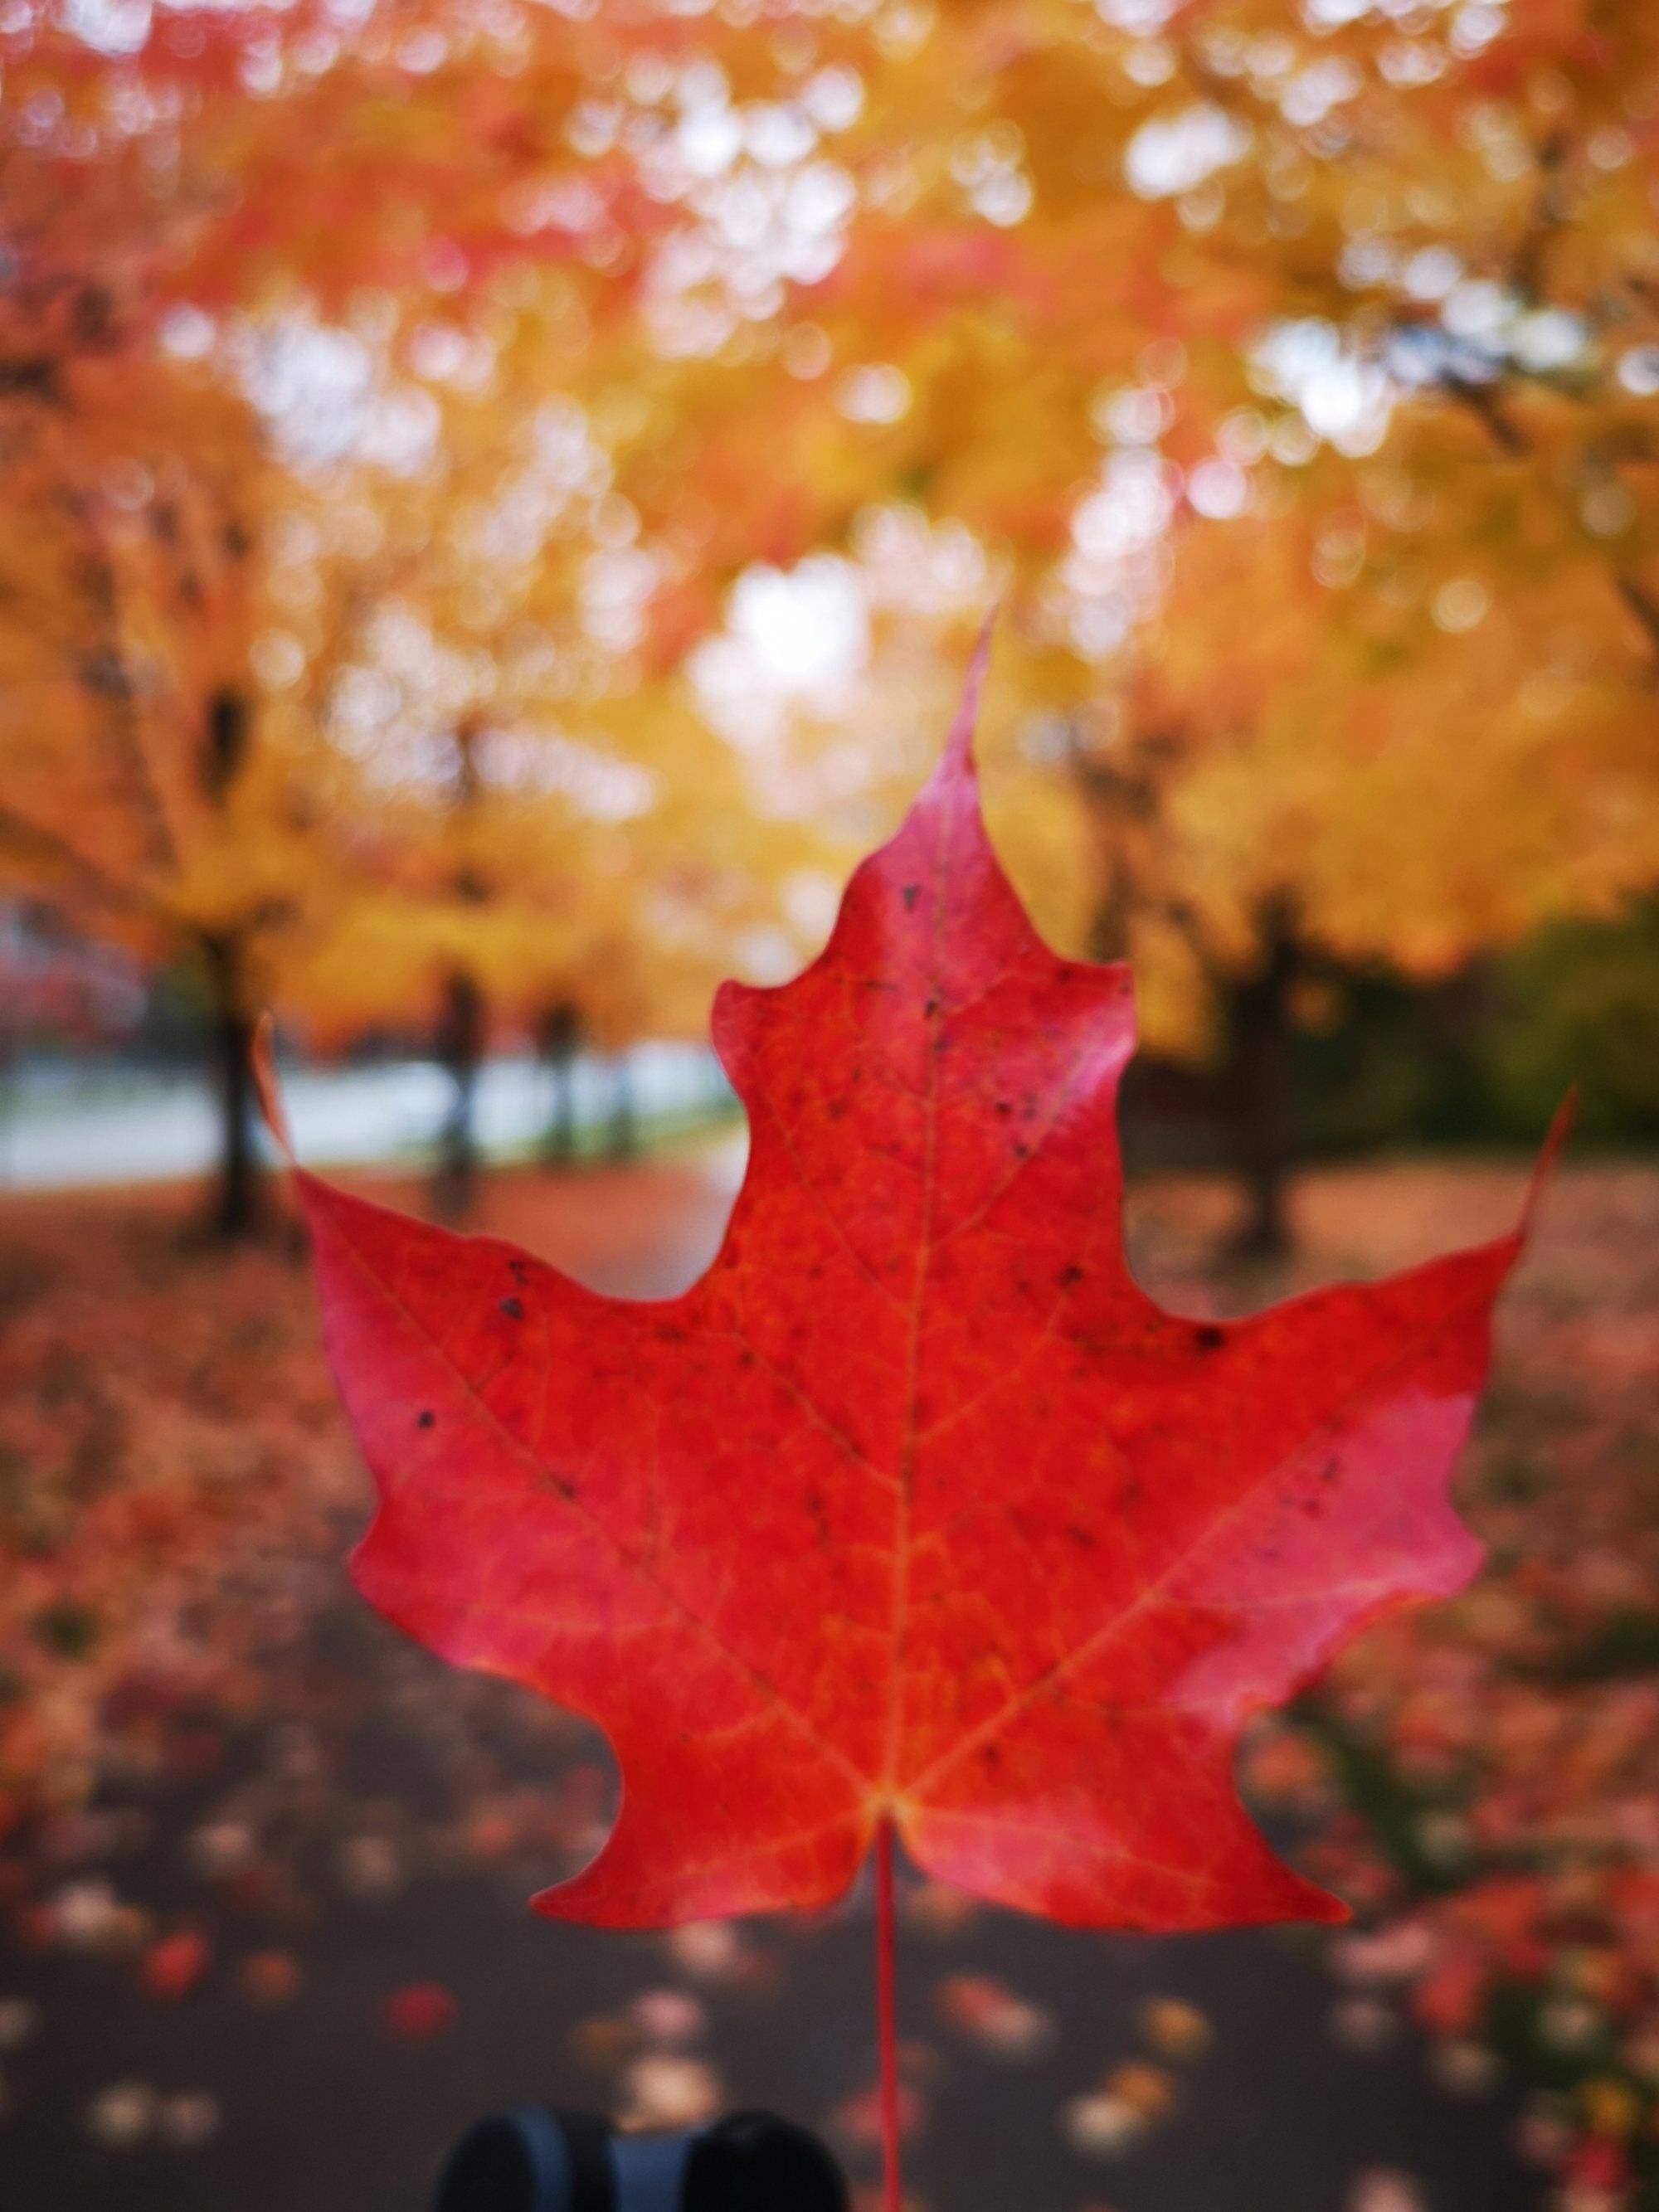 【游遍加拿大】魁北克追枫14天 从初秋走到秋末 只为寻找最美的枫叶-魁北克城旅游攻略-游记-去哪儿攻略